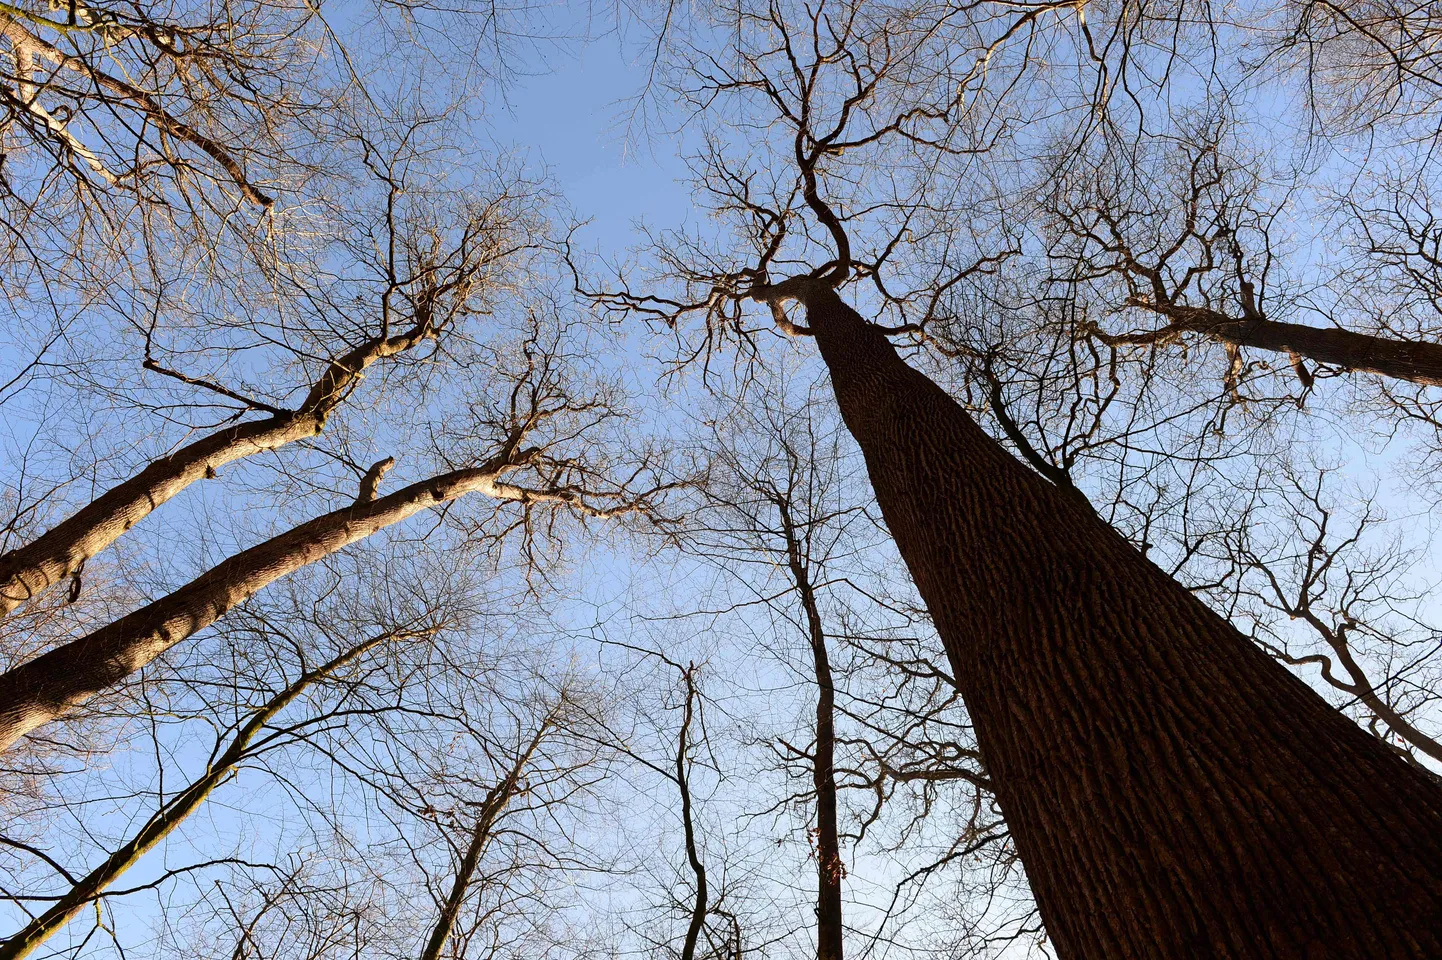 Enam kui 300 aasta vanuste puudega tammemets Loode-Prantsusmaal.